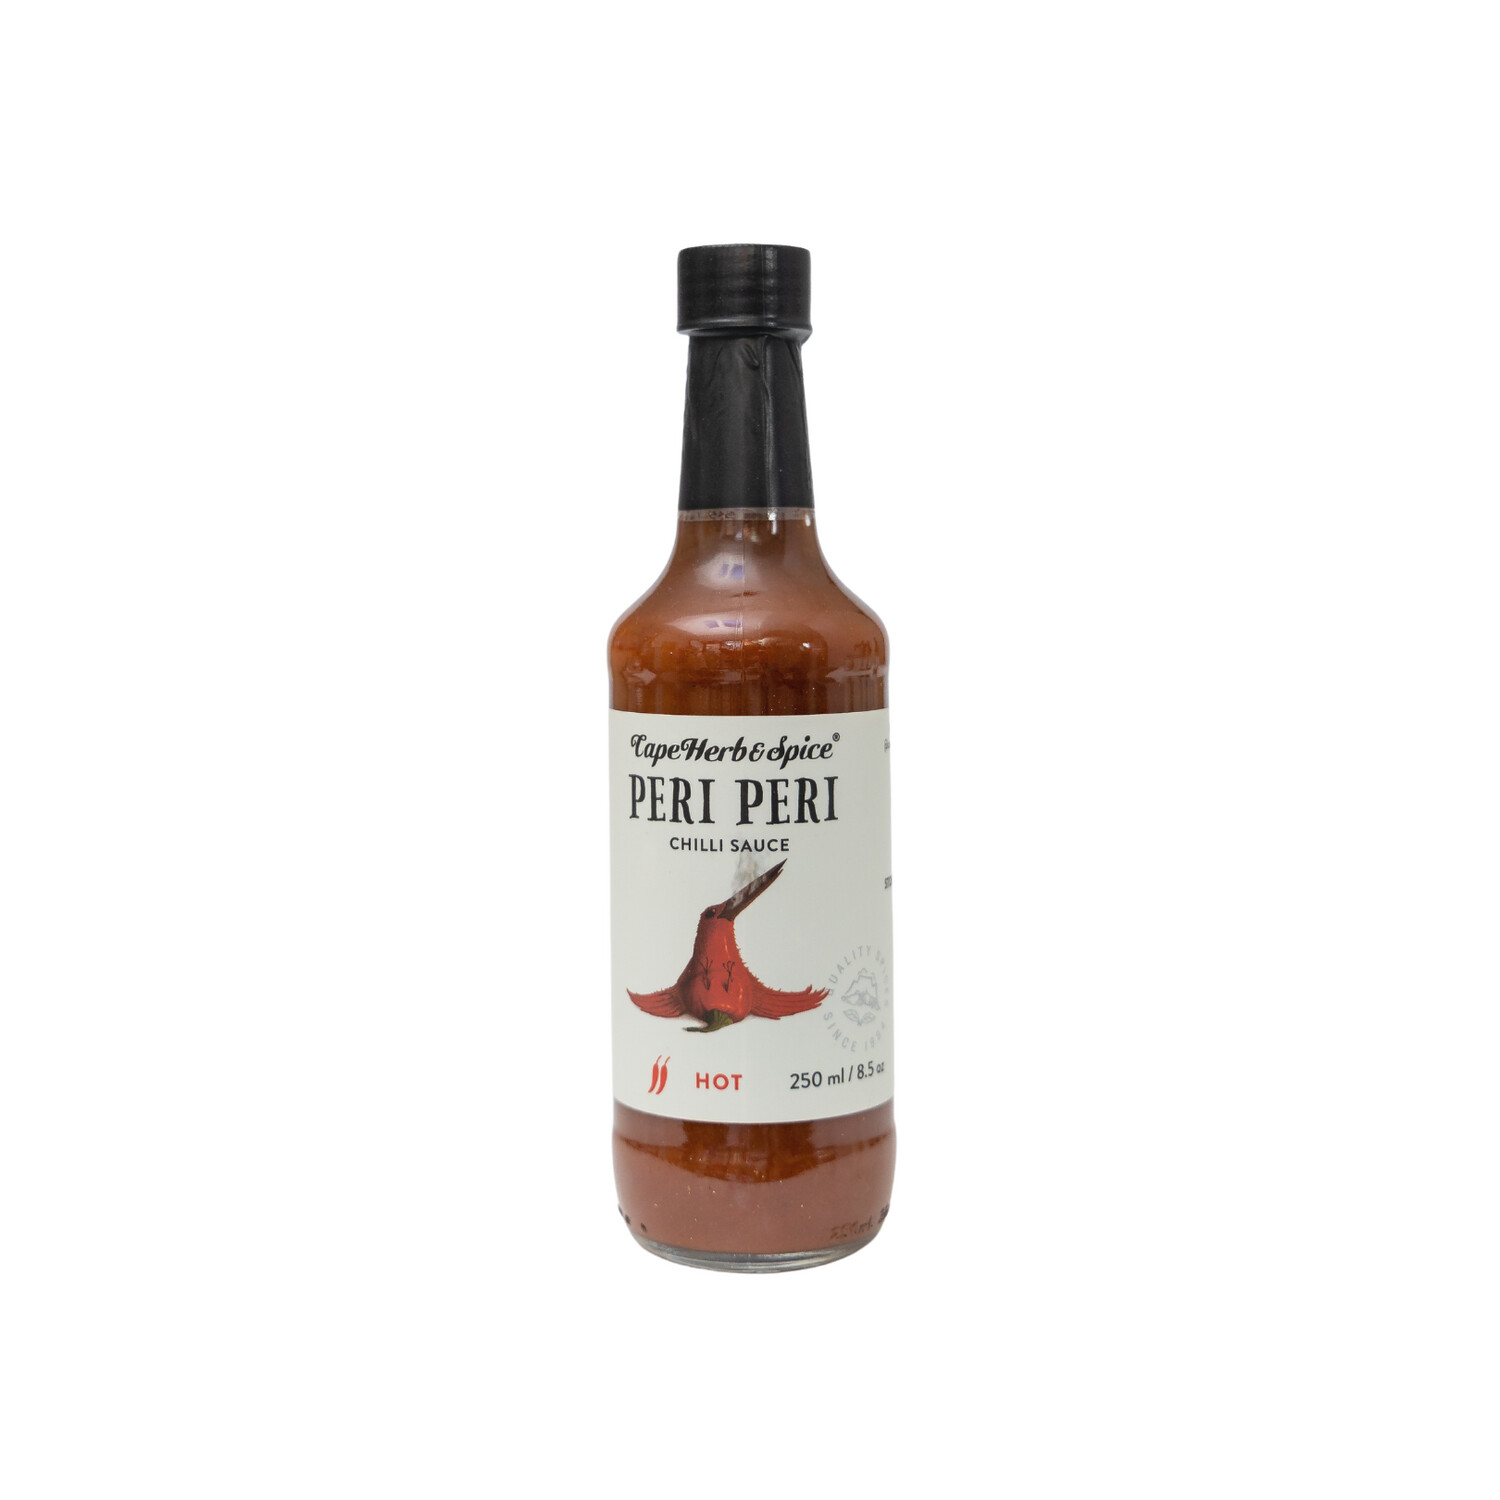 Cape Herb Peri Peri Hot 250ml